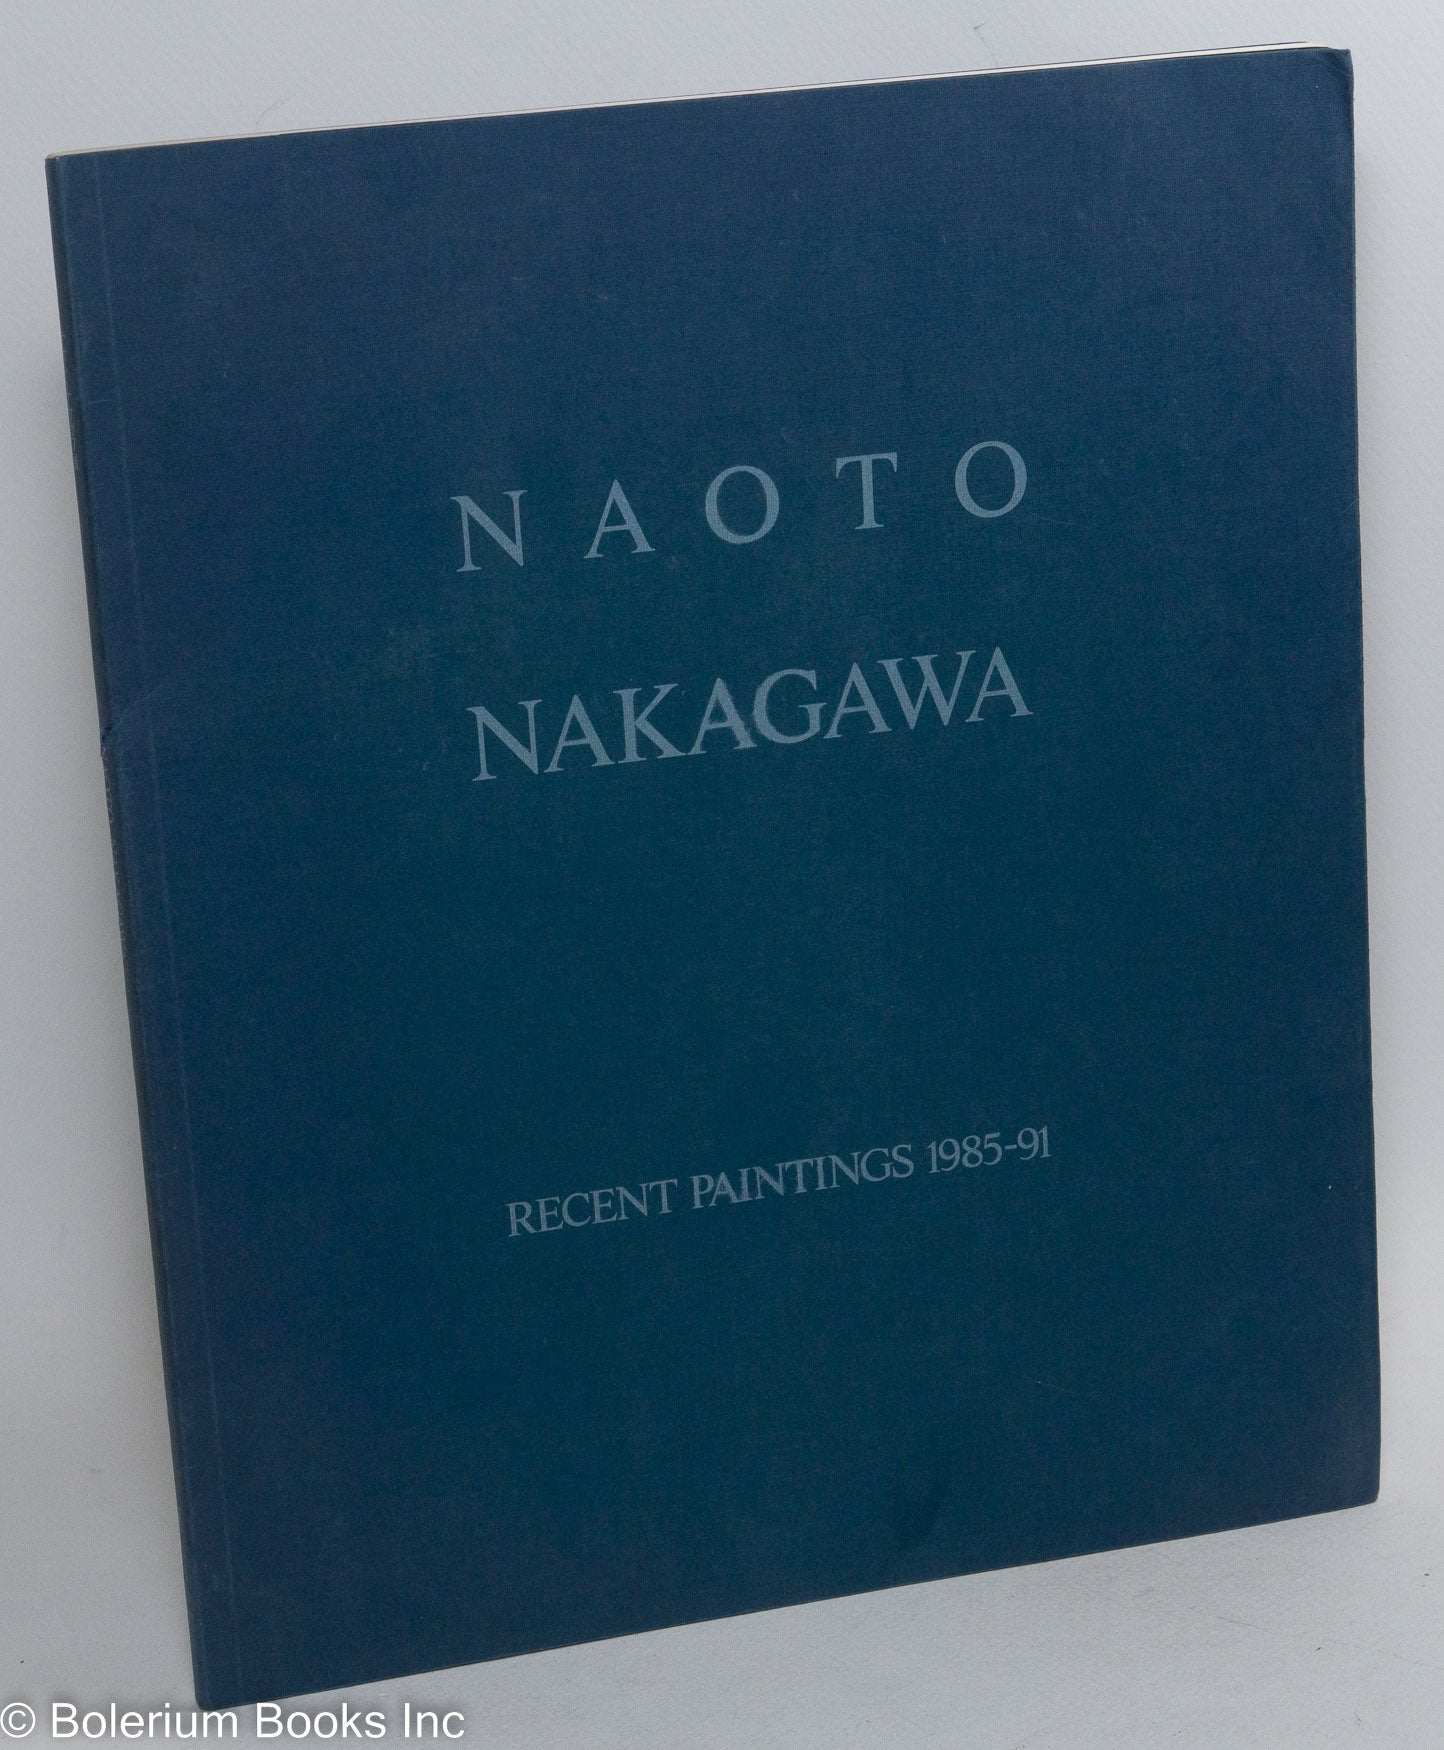 Naoto Nakagawa: Recent Paintings 1985-91 | Naoto Nakagawa